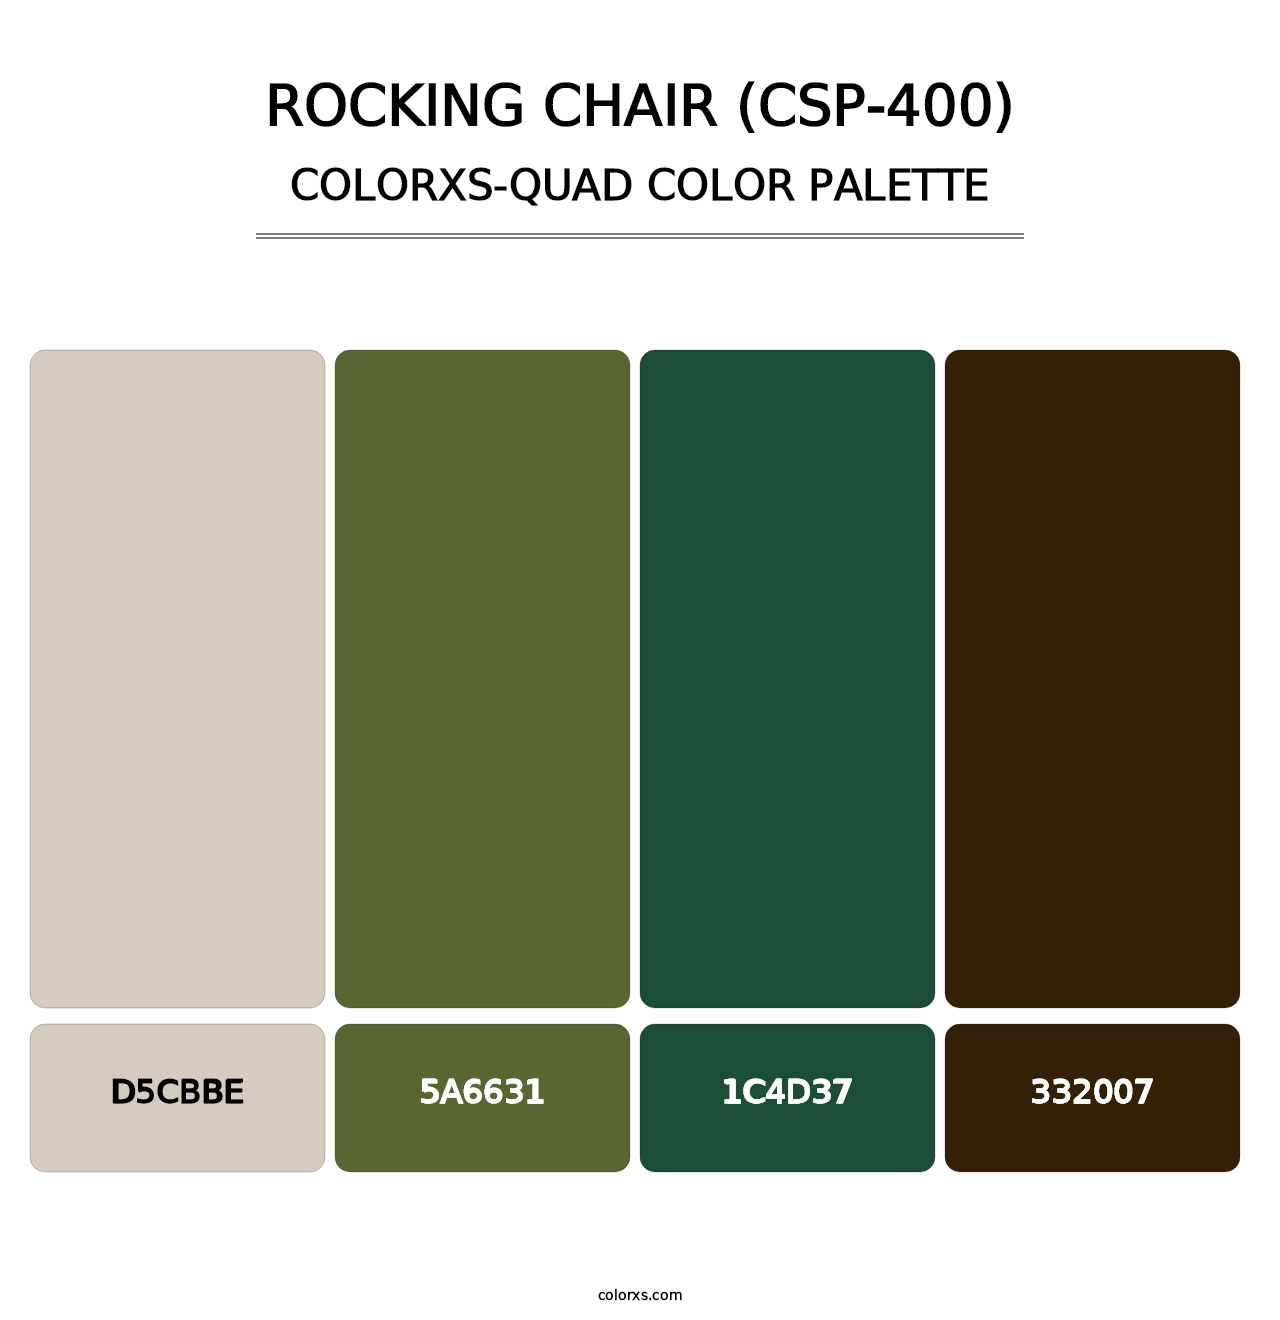 Rocking Chair (CSP-400) - Colorxs Quad Palette